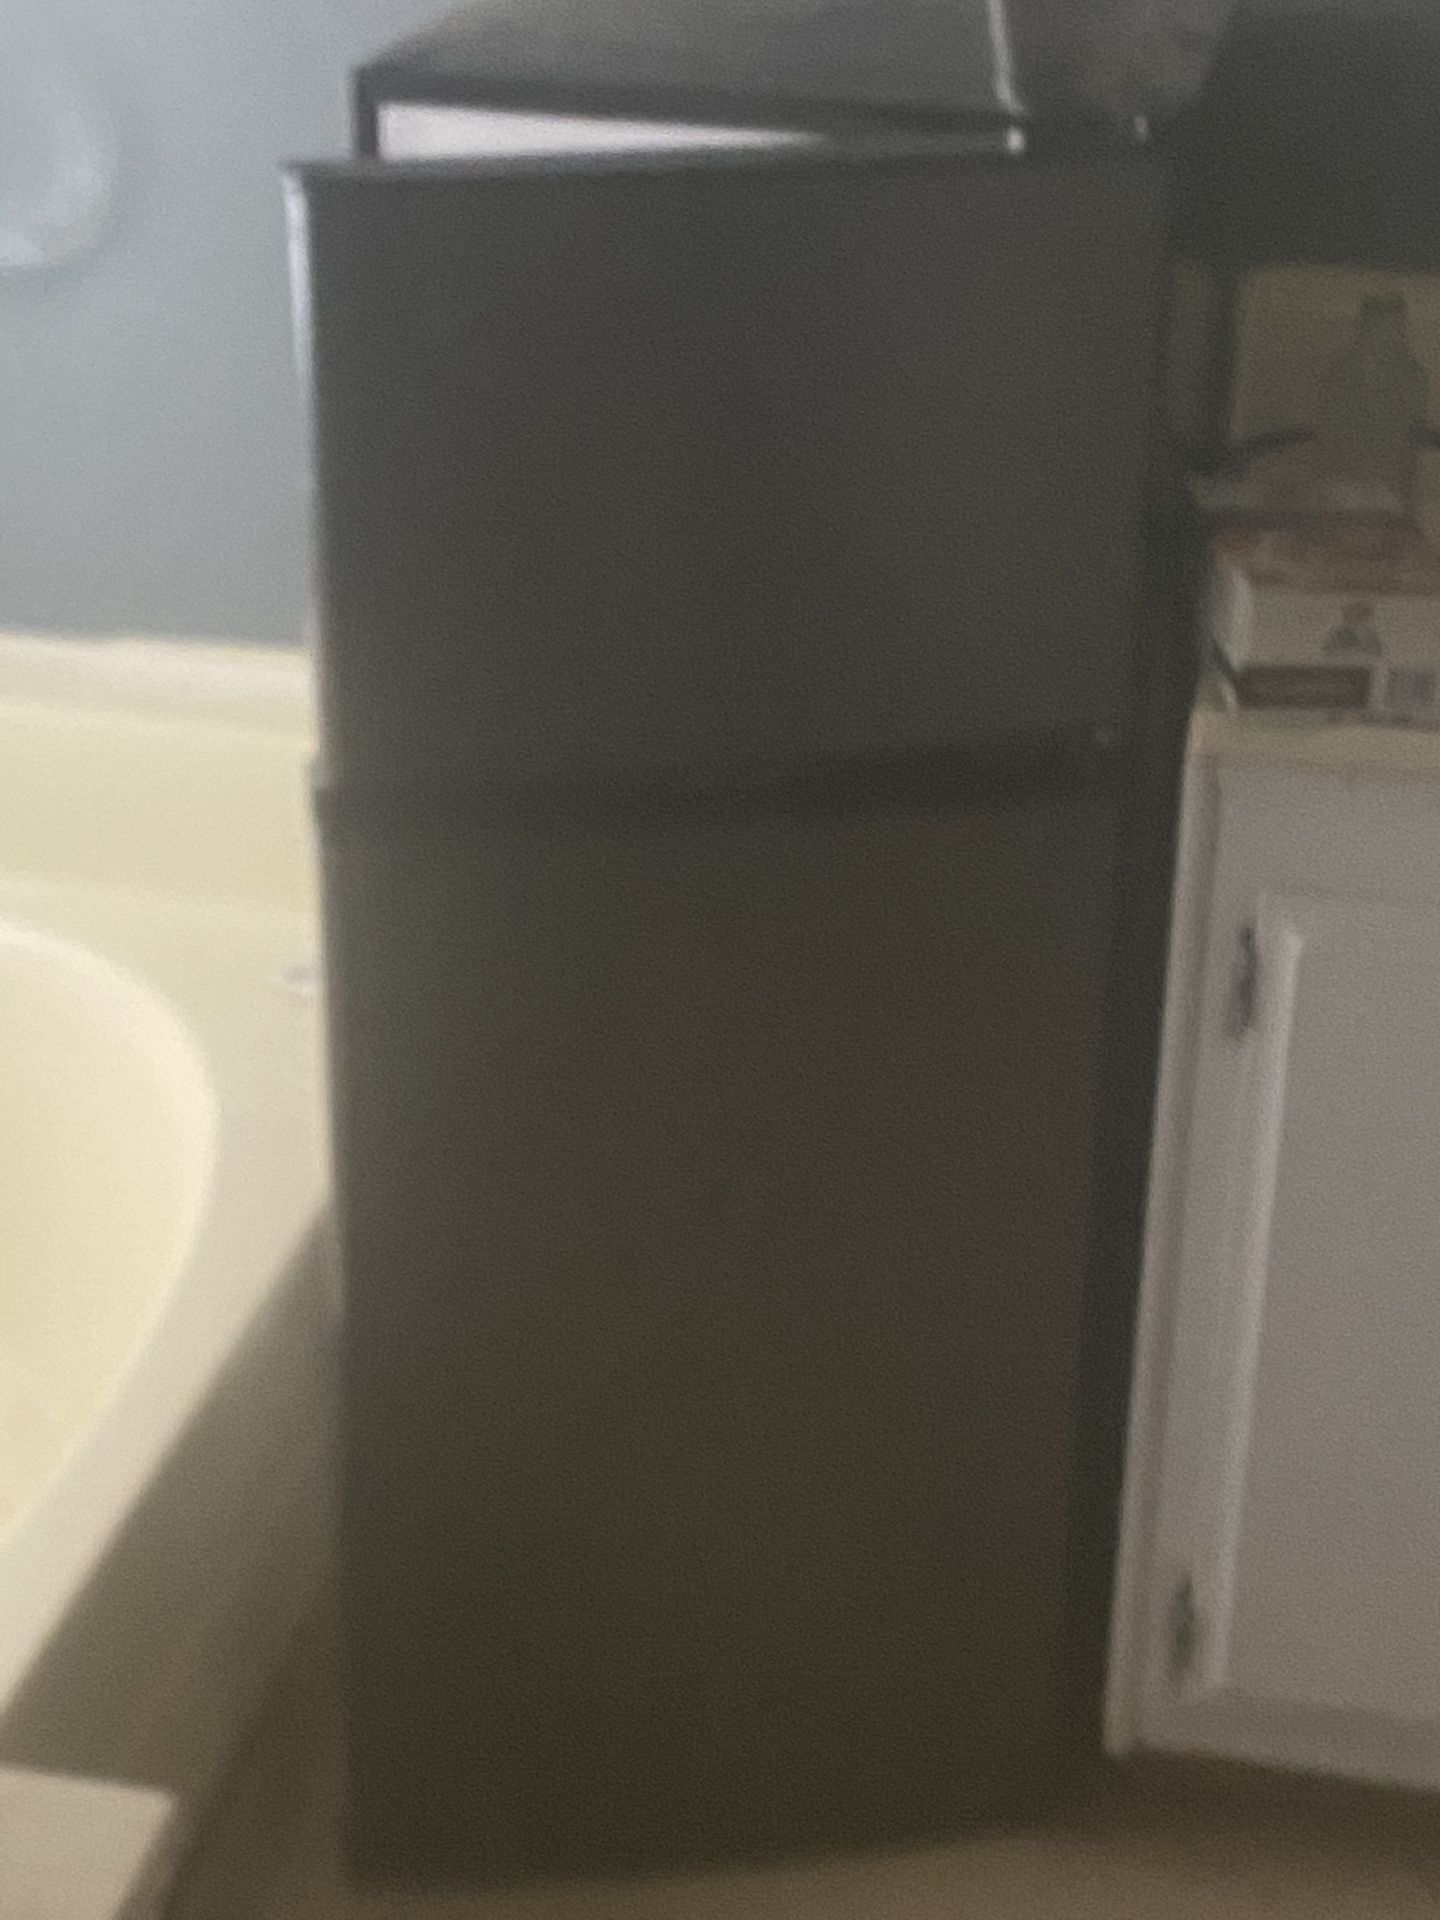 Mini fridge frigidaire